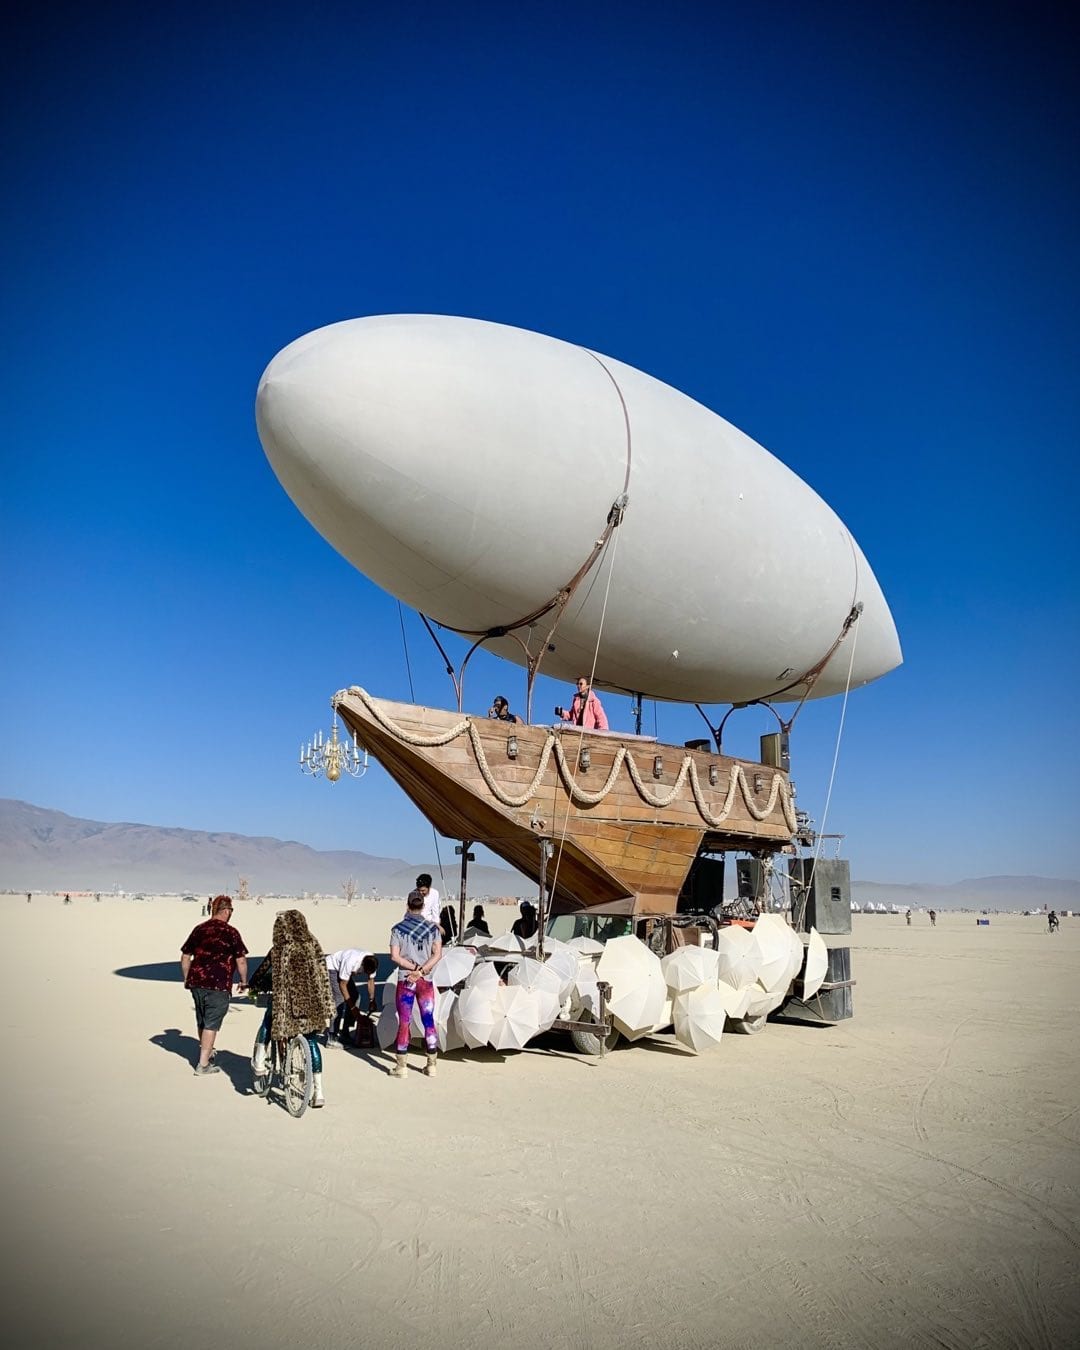 Огненный фестиваль Burning Man вернулся: 16 эпичных фотографий с самого горячего мероприятия планеты 62